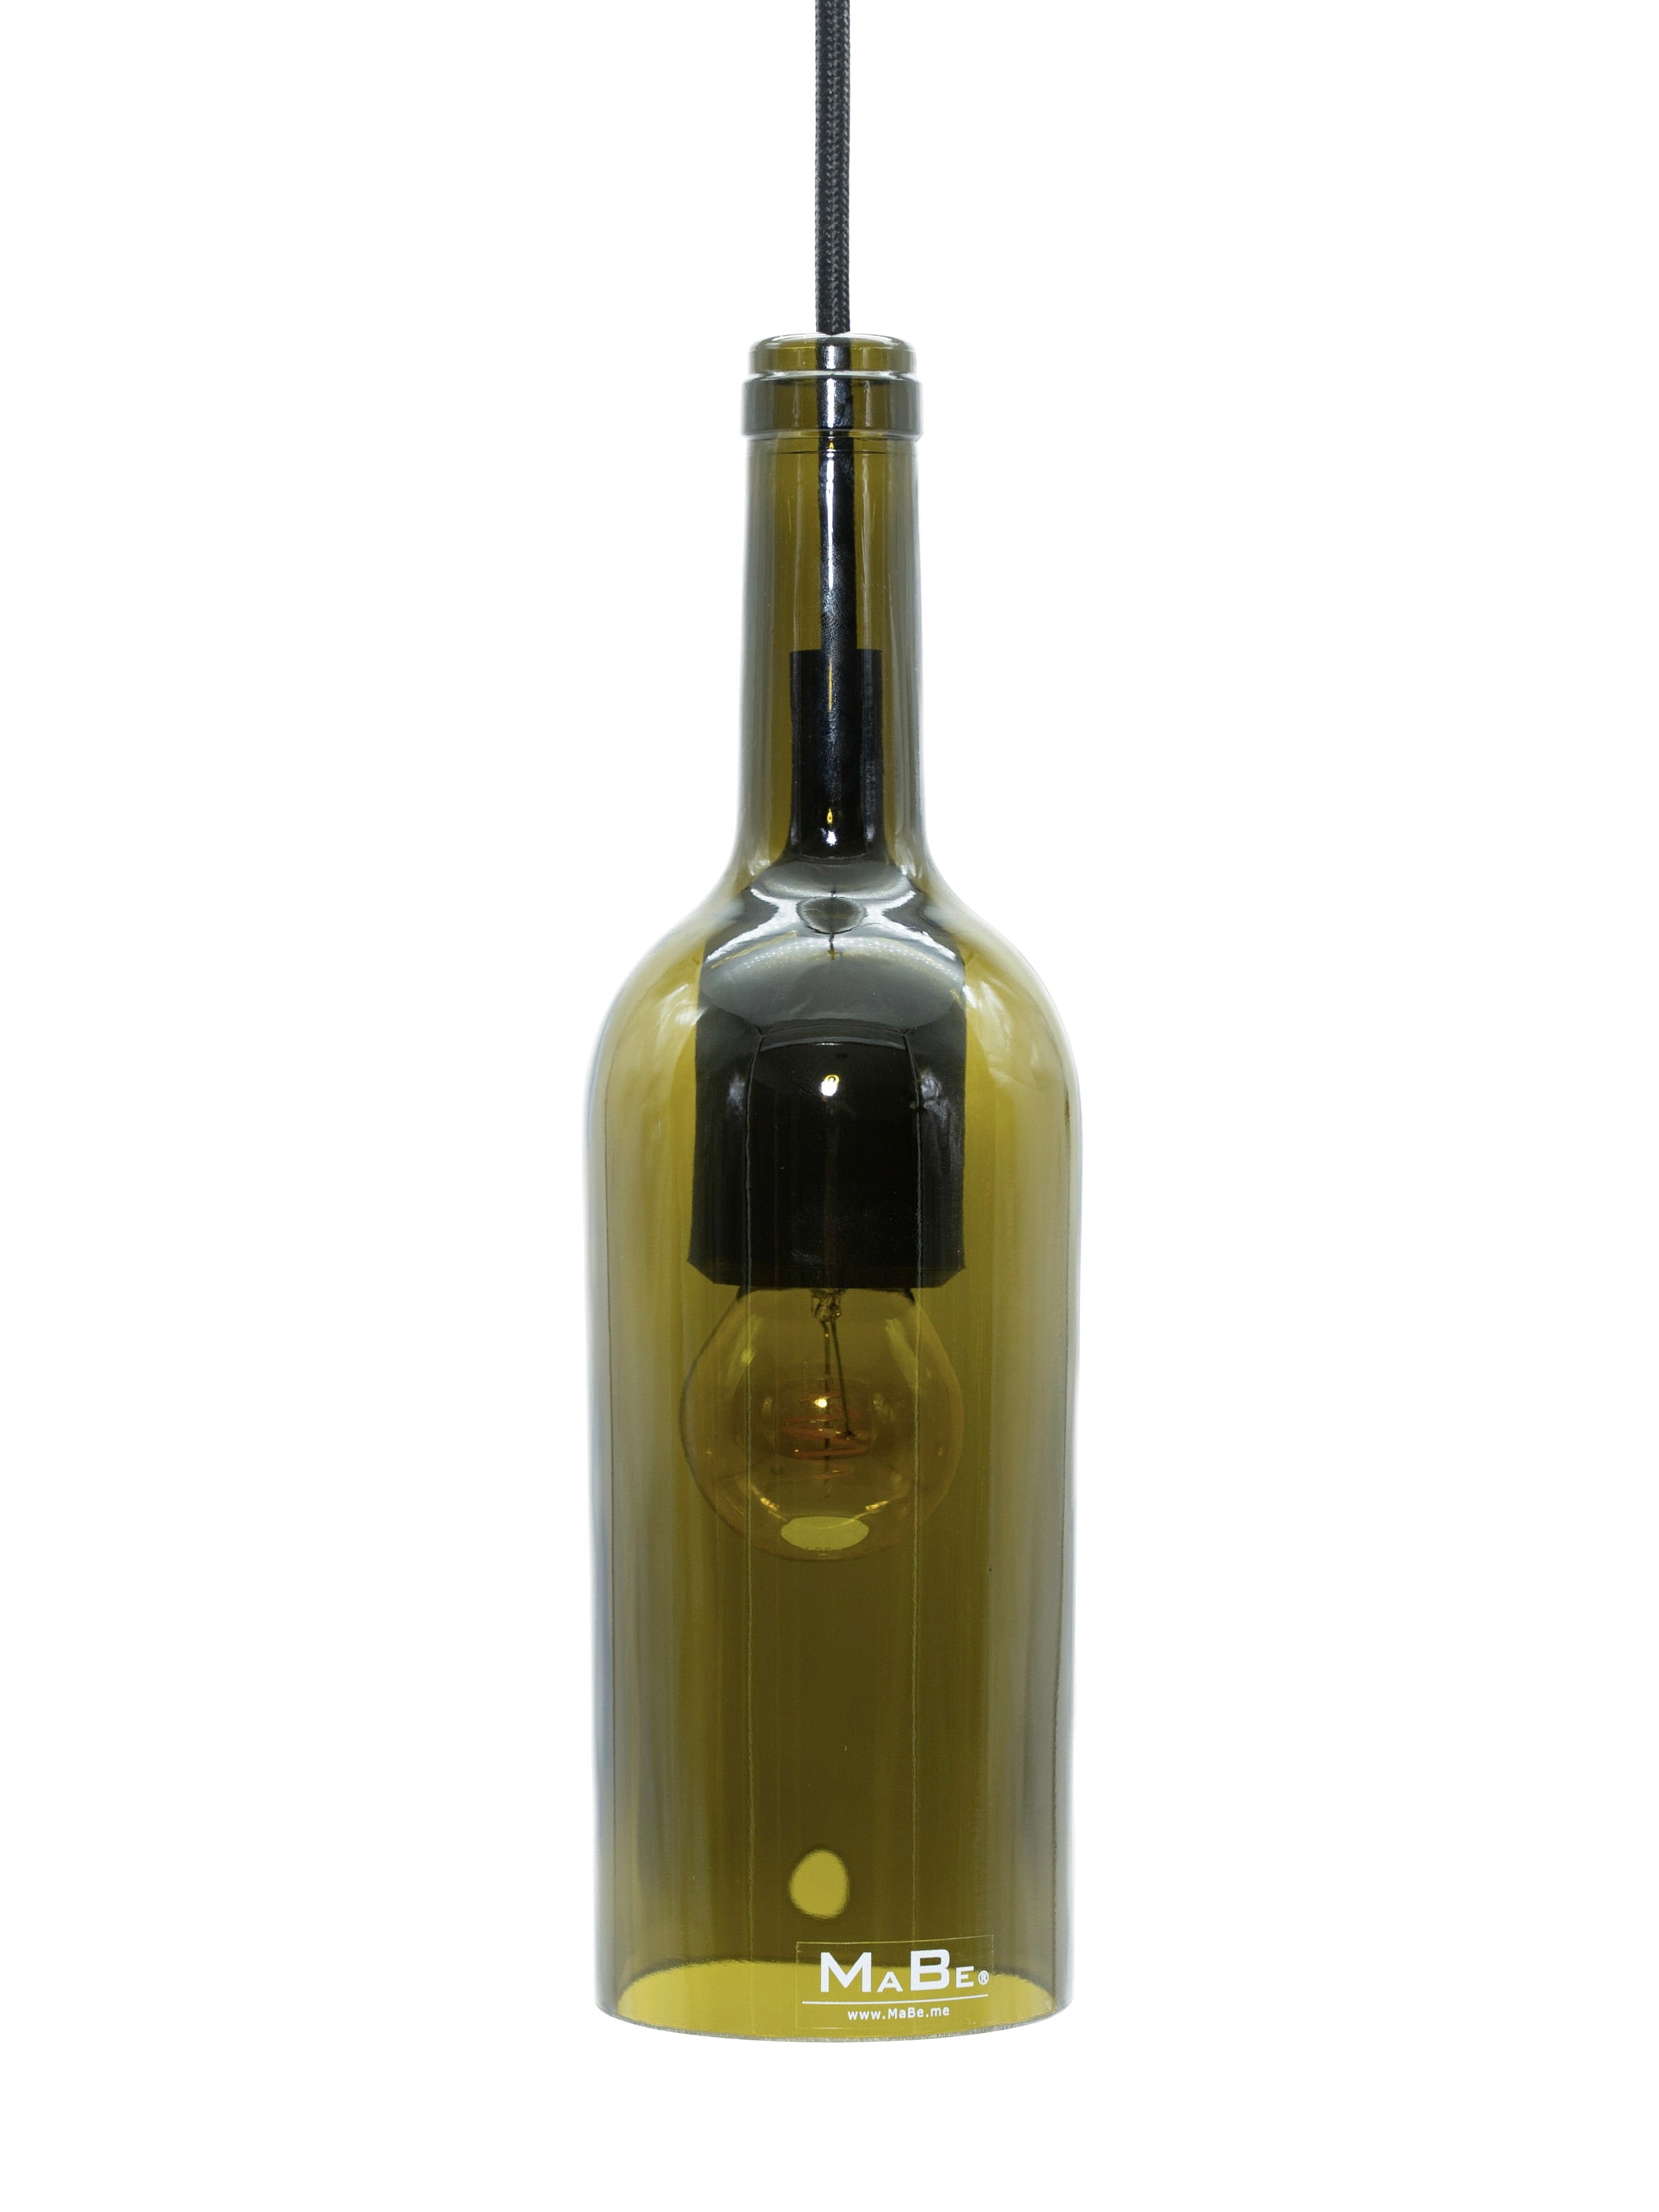 Hänge Leuchte aus der Weinflasche in oliv